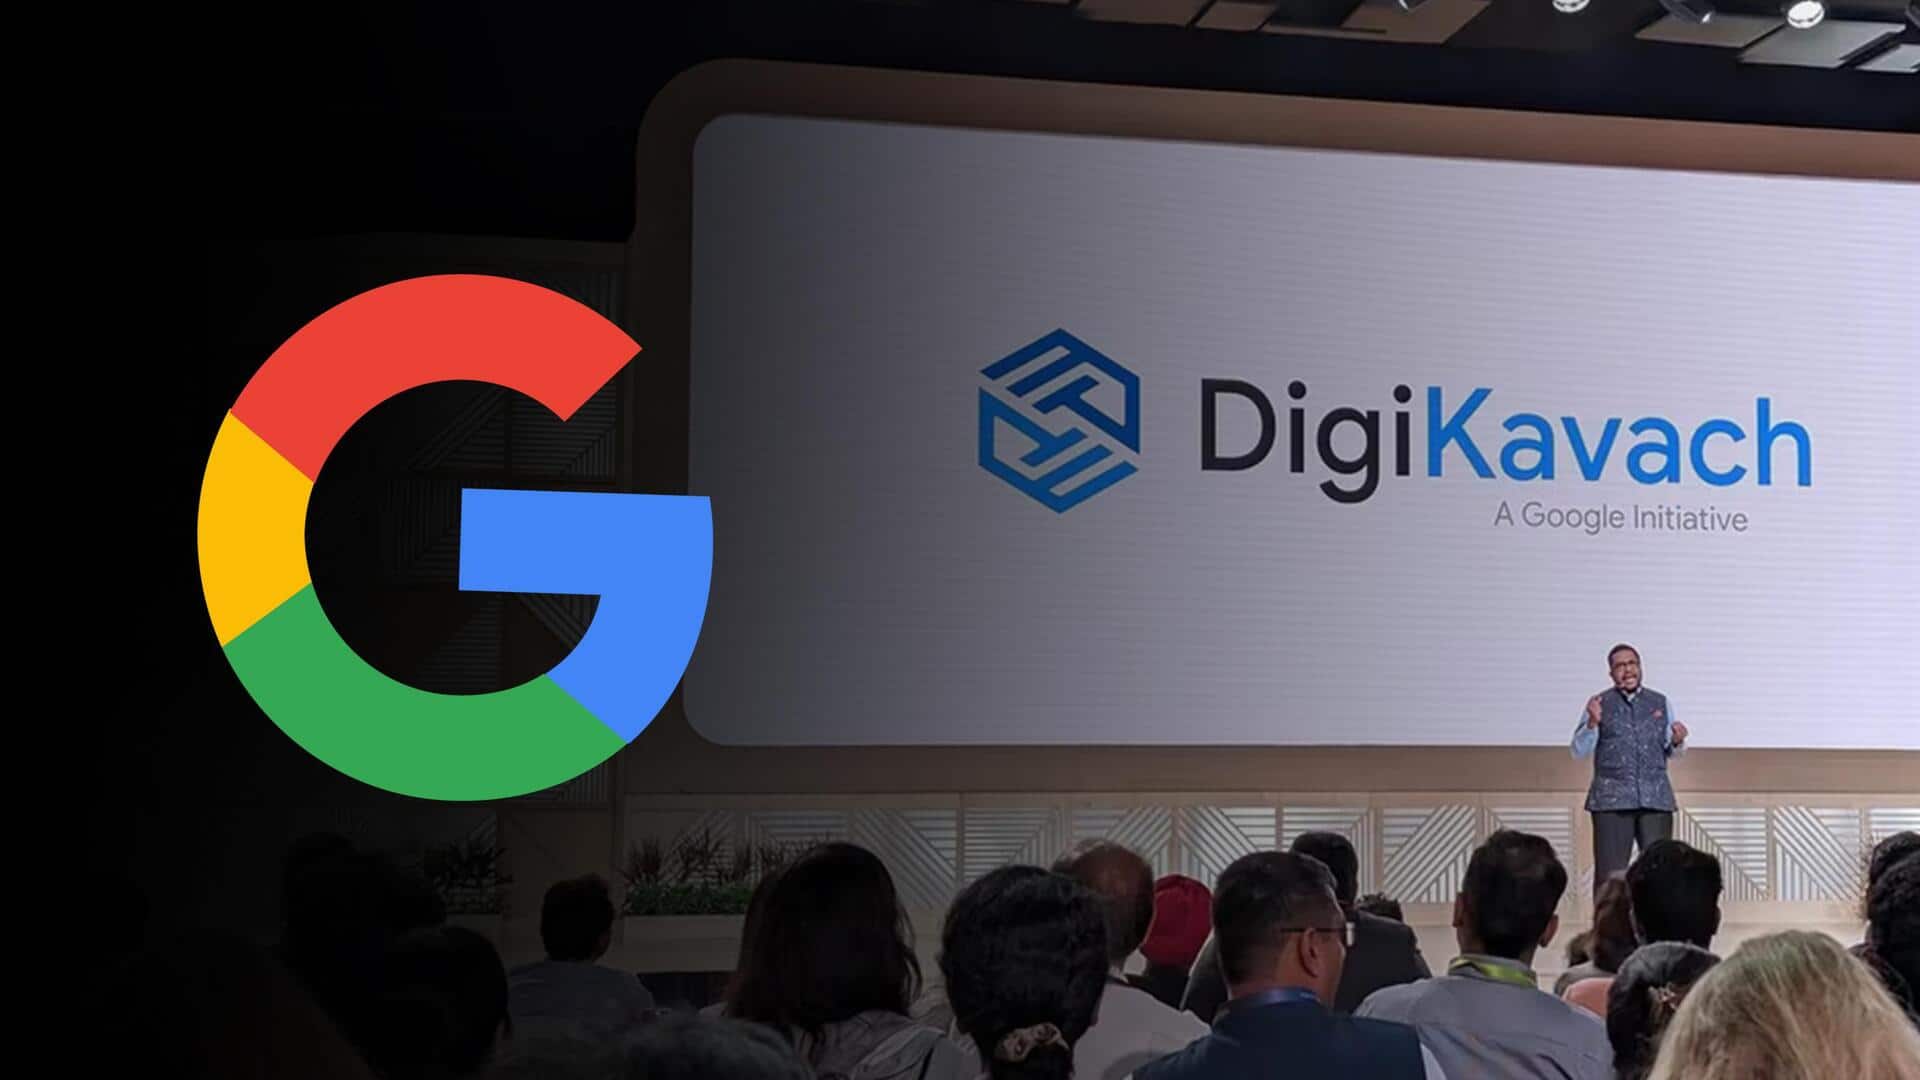 गूगल भारत में लॉन्च करेगी डिजी कवच, ऑनलाइन स्कैम से बचाने में ऐसे करेगा मदद